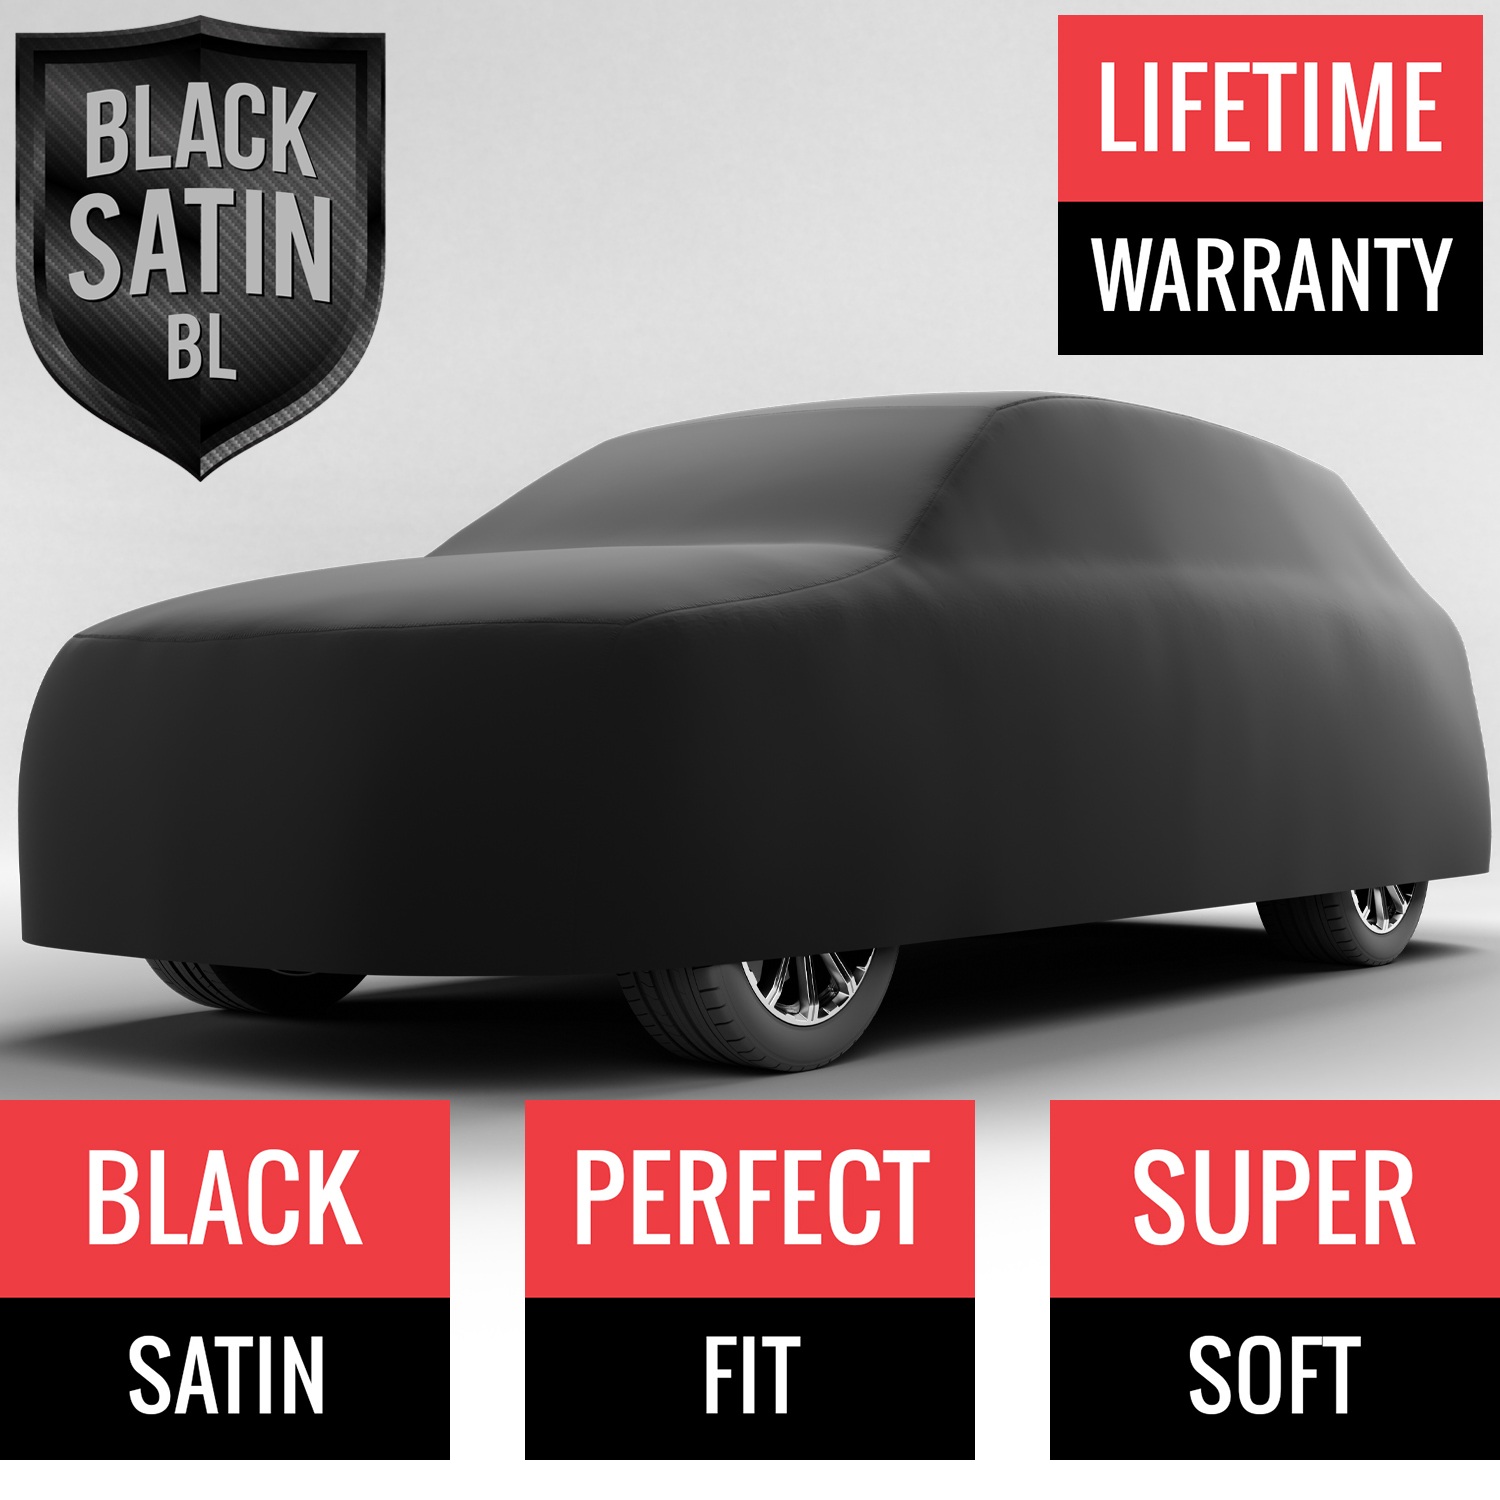 Black Satin BL - Black Car Cover for Bentley Bentayga 2020 SUV 4-Door